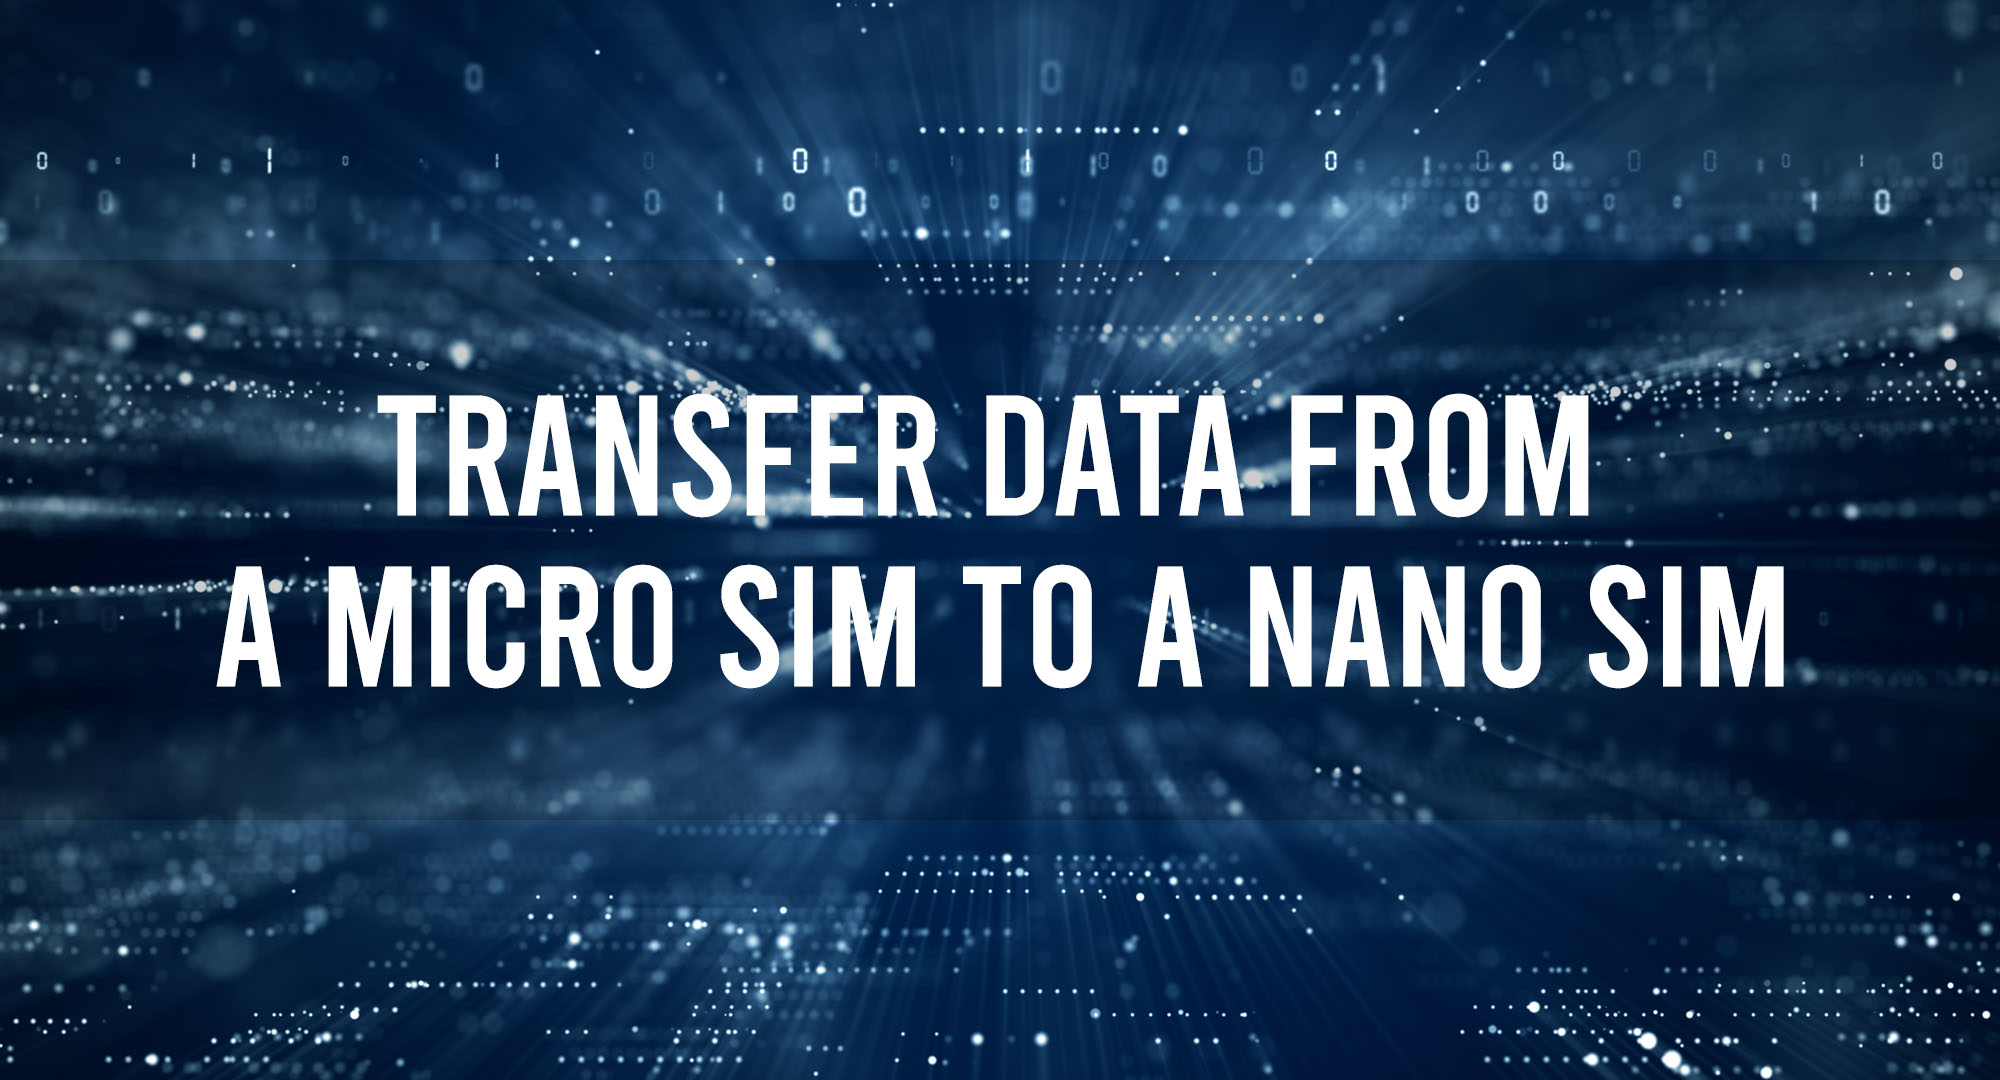 Transfer Data from a Micro Sim to a Nano SIM